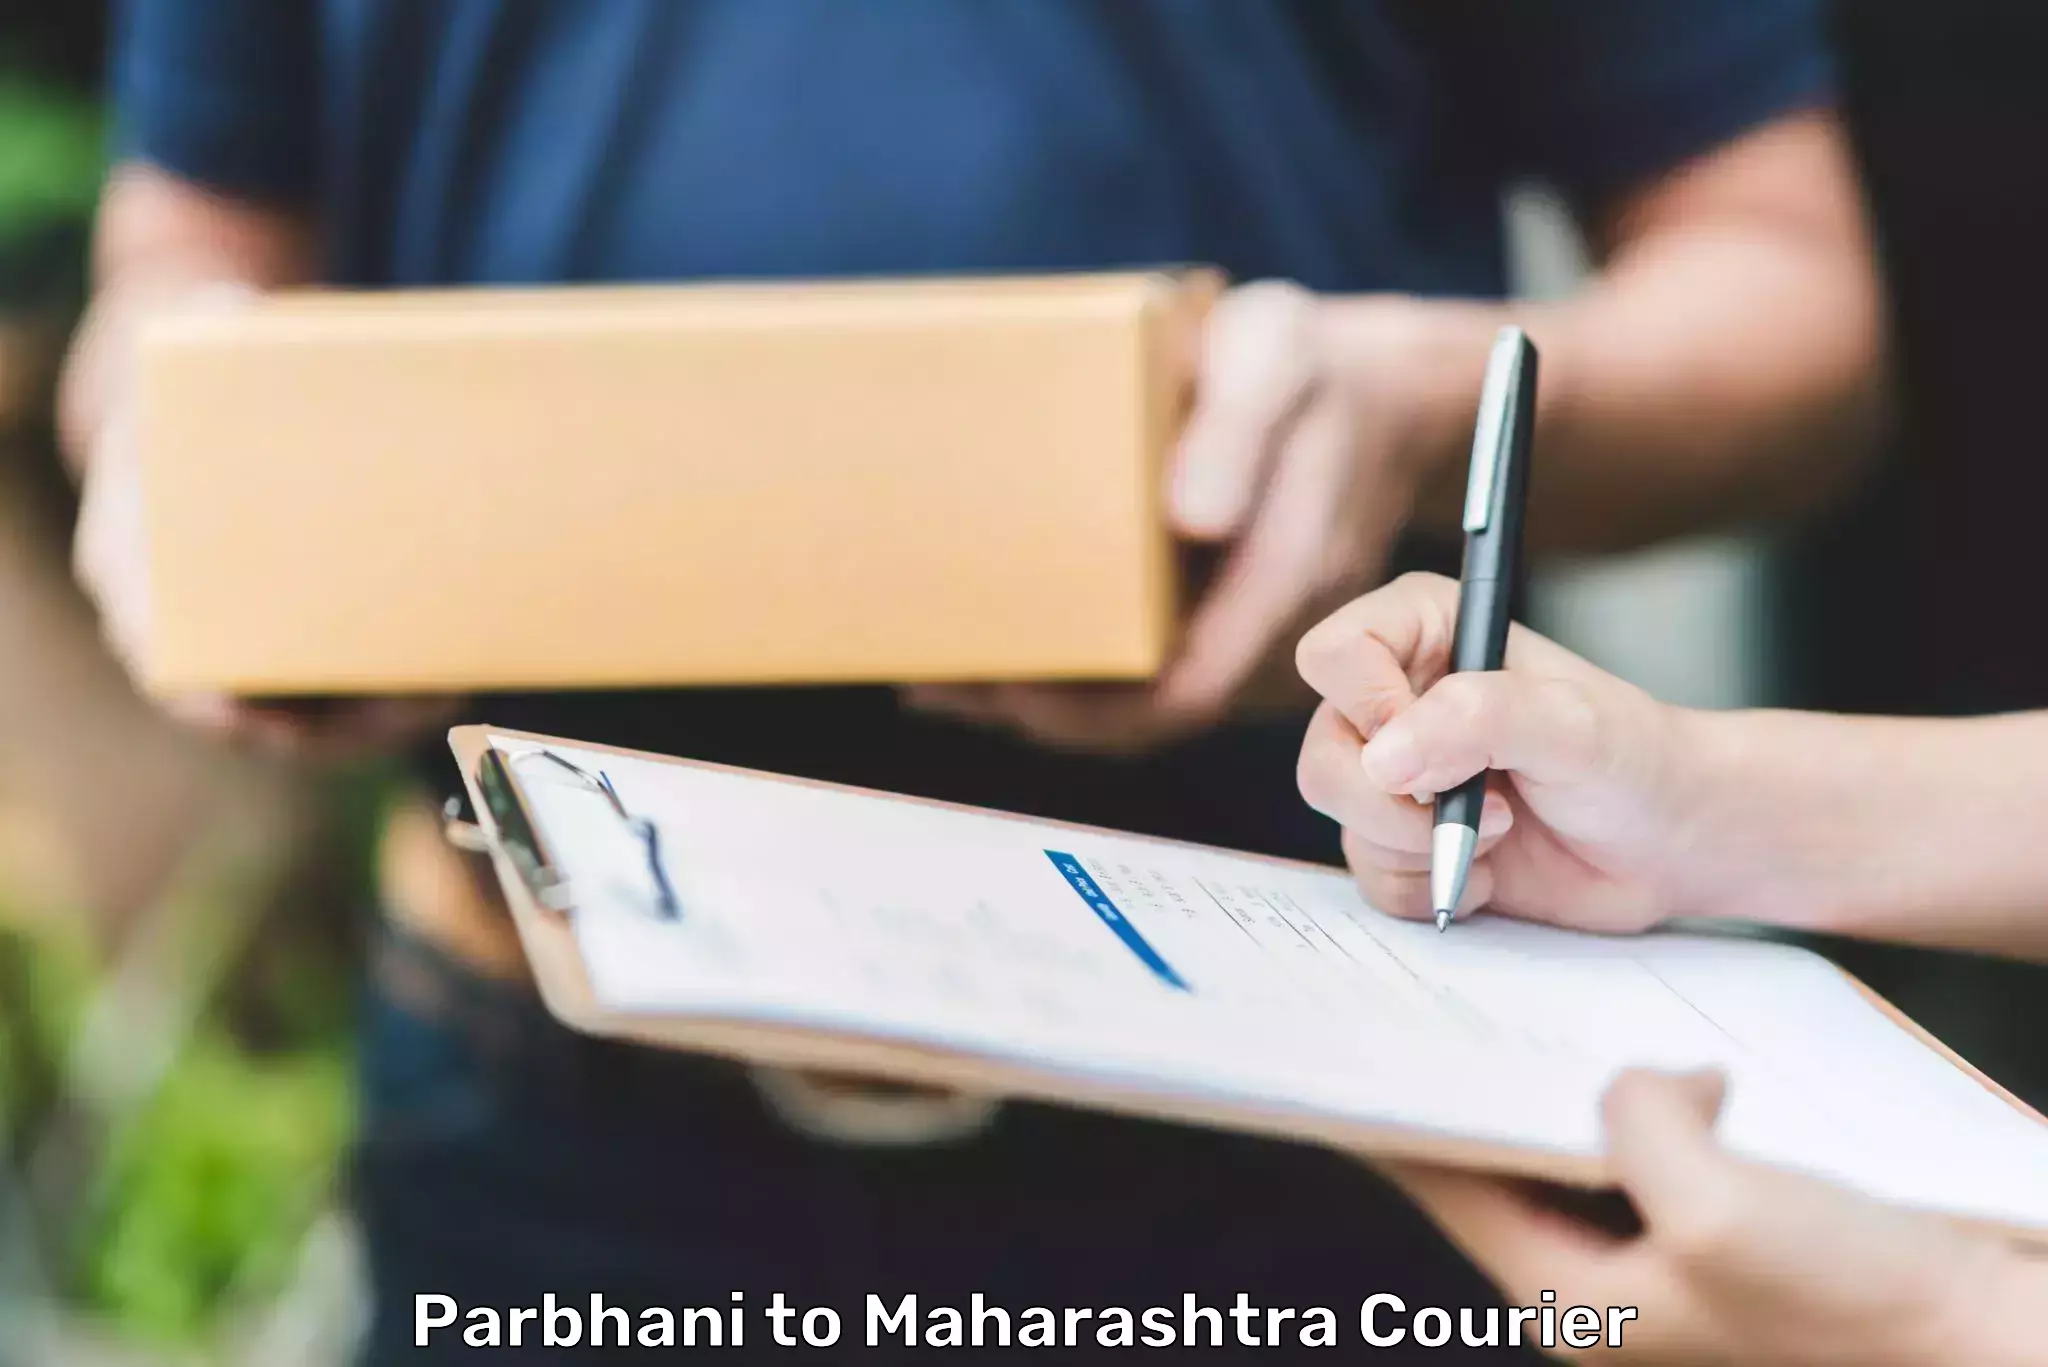 Courier app Parbhani to Maharashtra